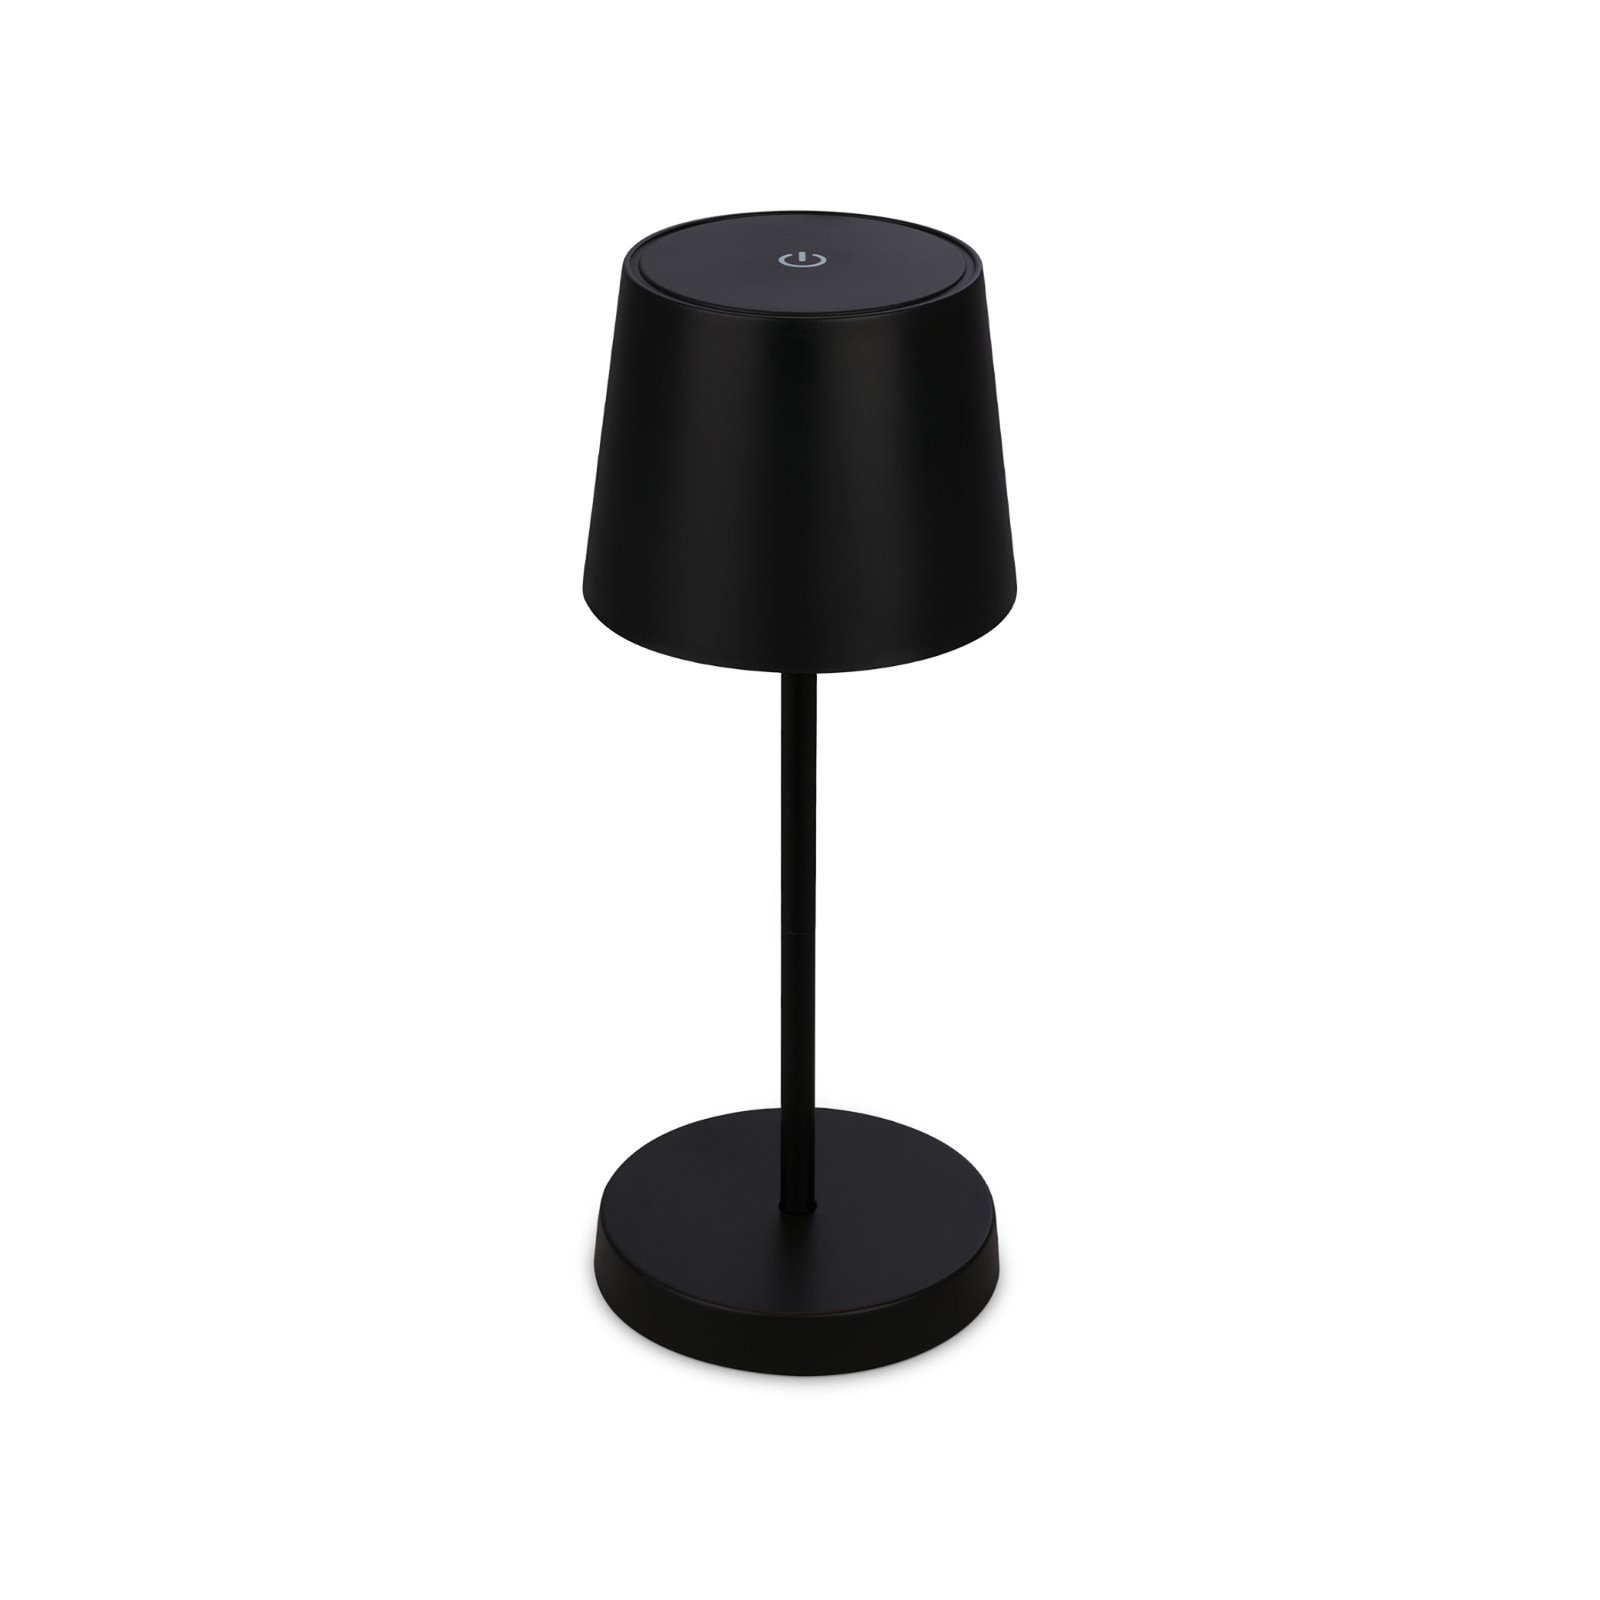 Piha LED asztali lámpa újratölthető akkumulátorral, fekete színben